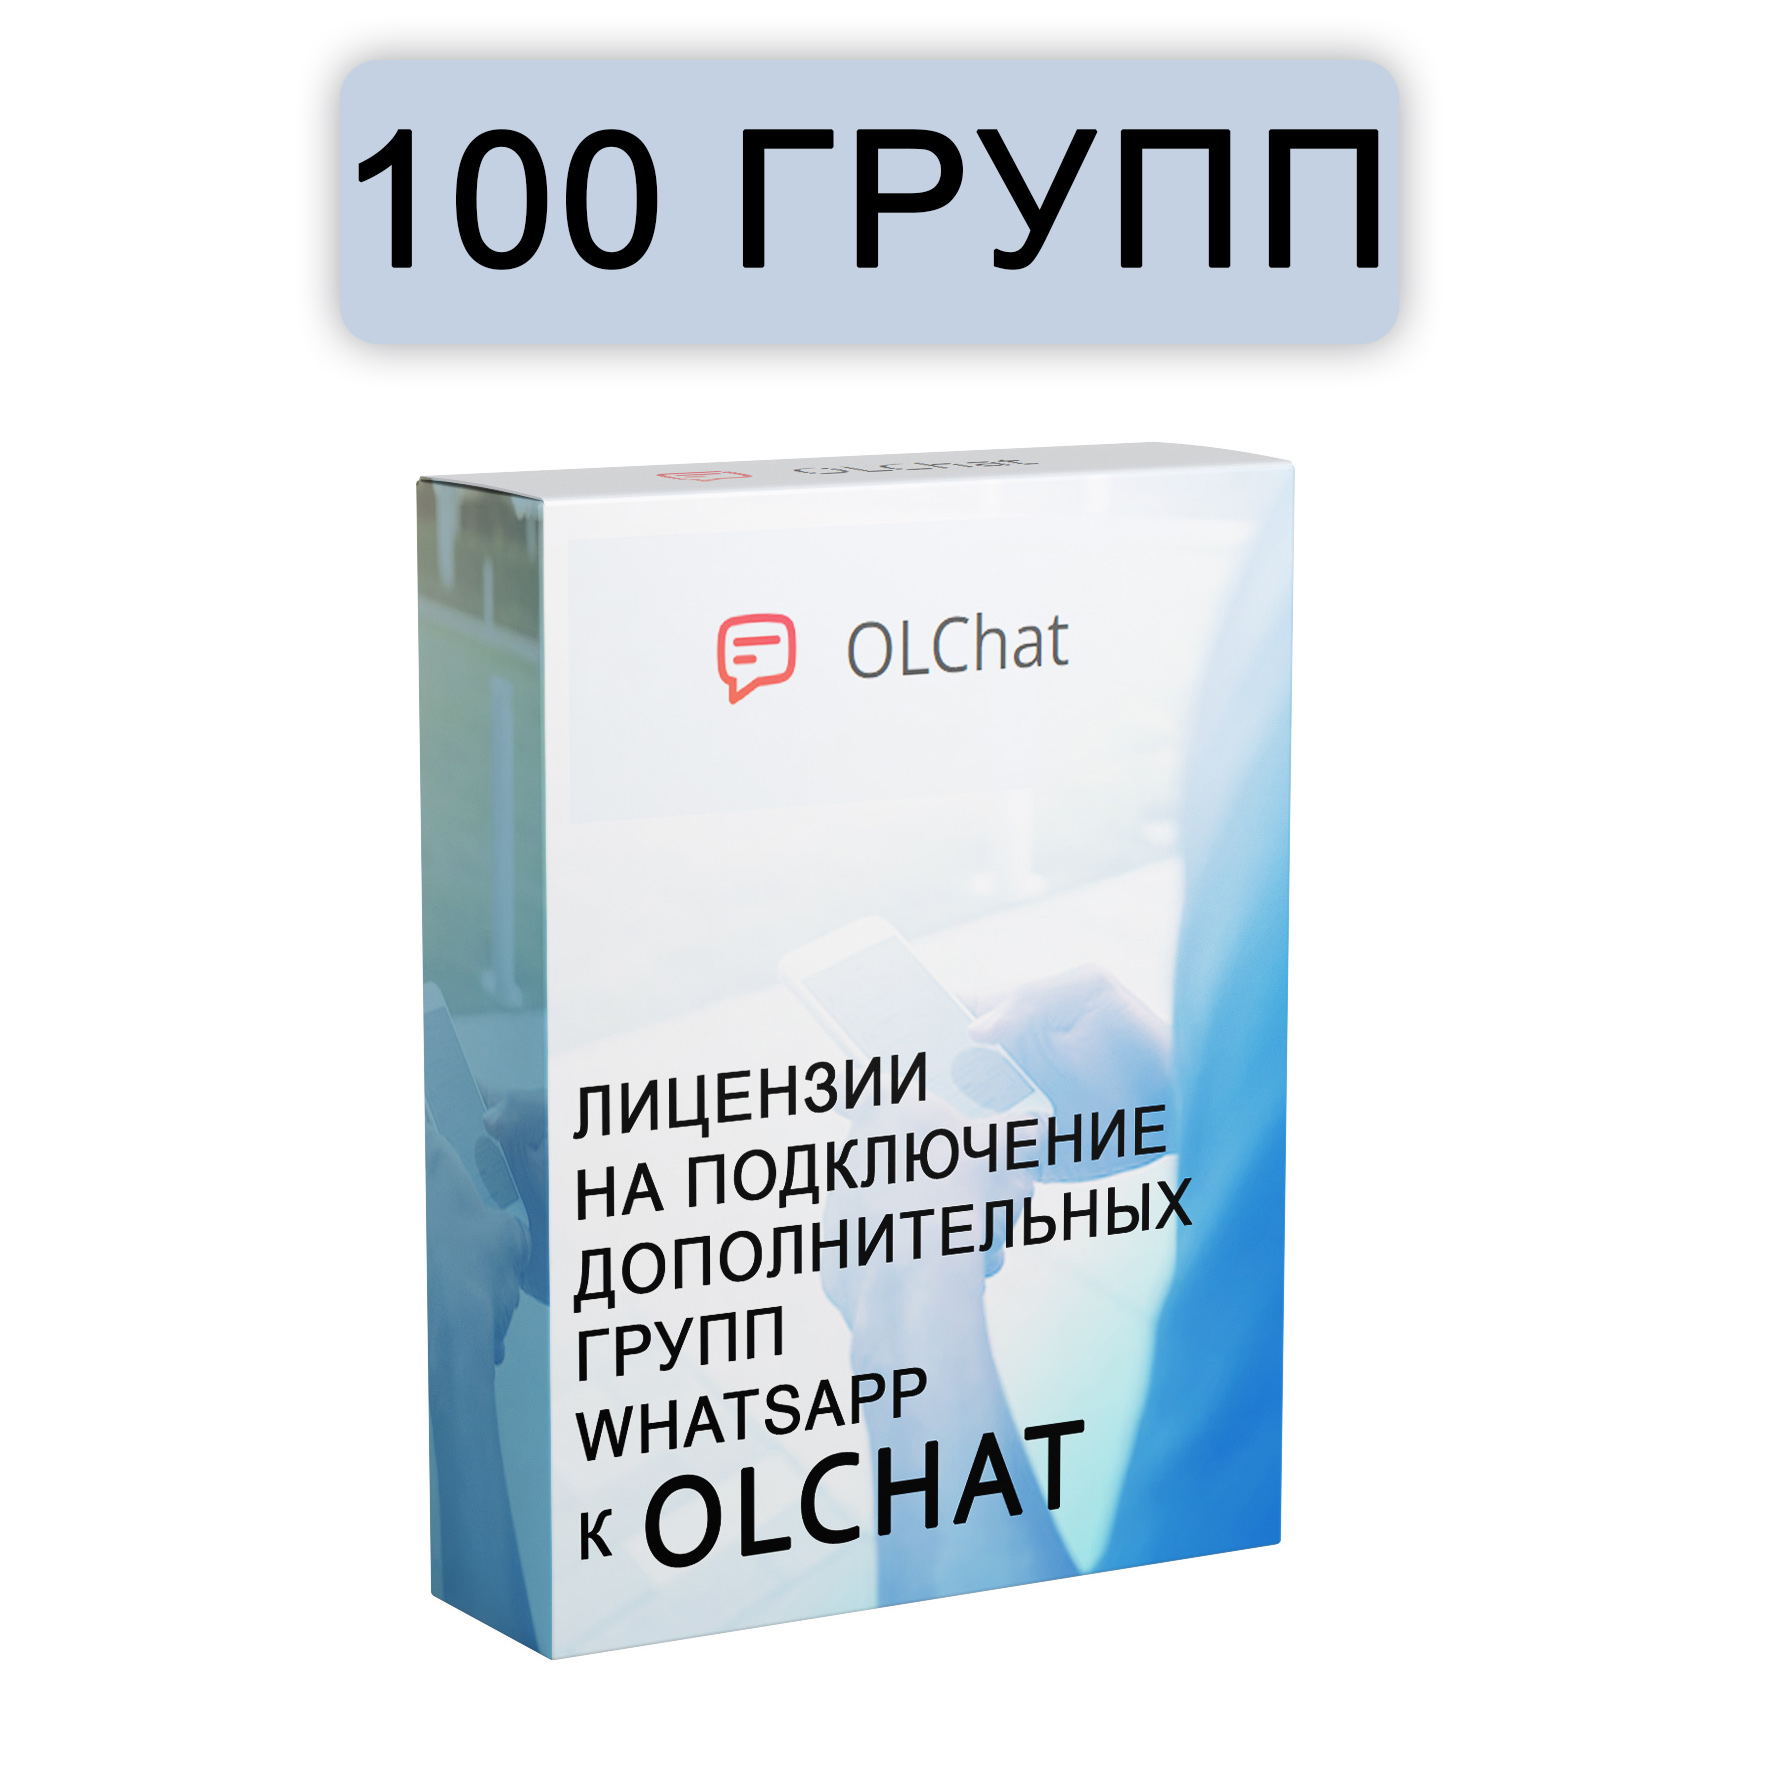 Подключение 100 групп WhatsApp к OLChat на 30 дней